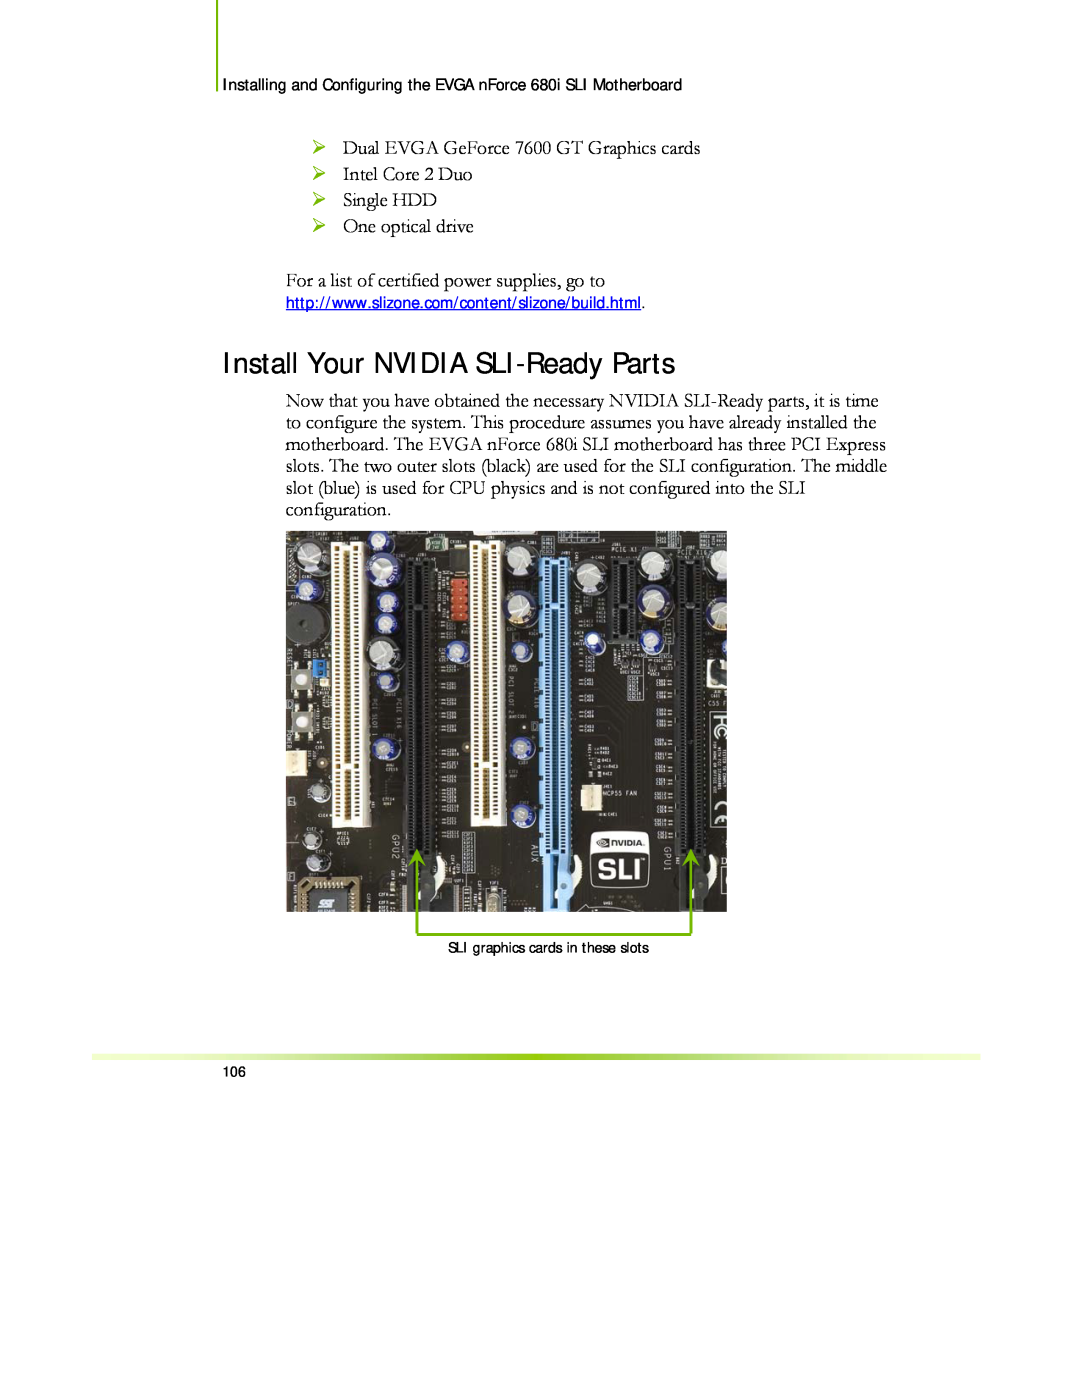 EVGA 122-CK-NF68-XX manual Install Your NVIDIA SLI-Ready Parts 